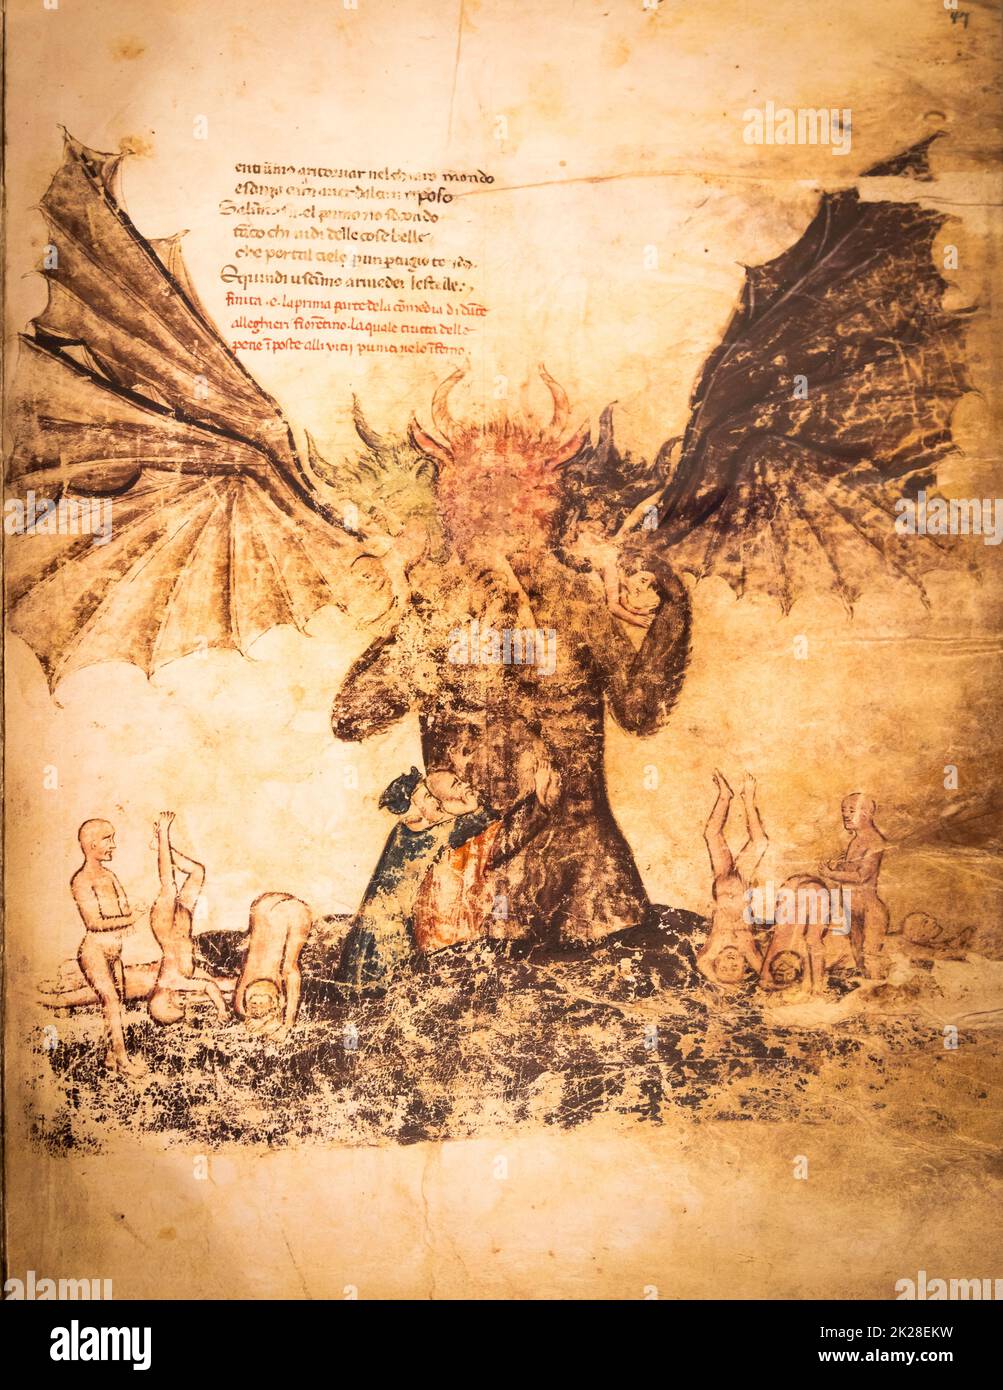 Foglio manoscritto antico. Libro gotico con illustrazione satanica dell'inferno. Foto Stock